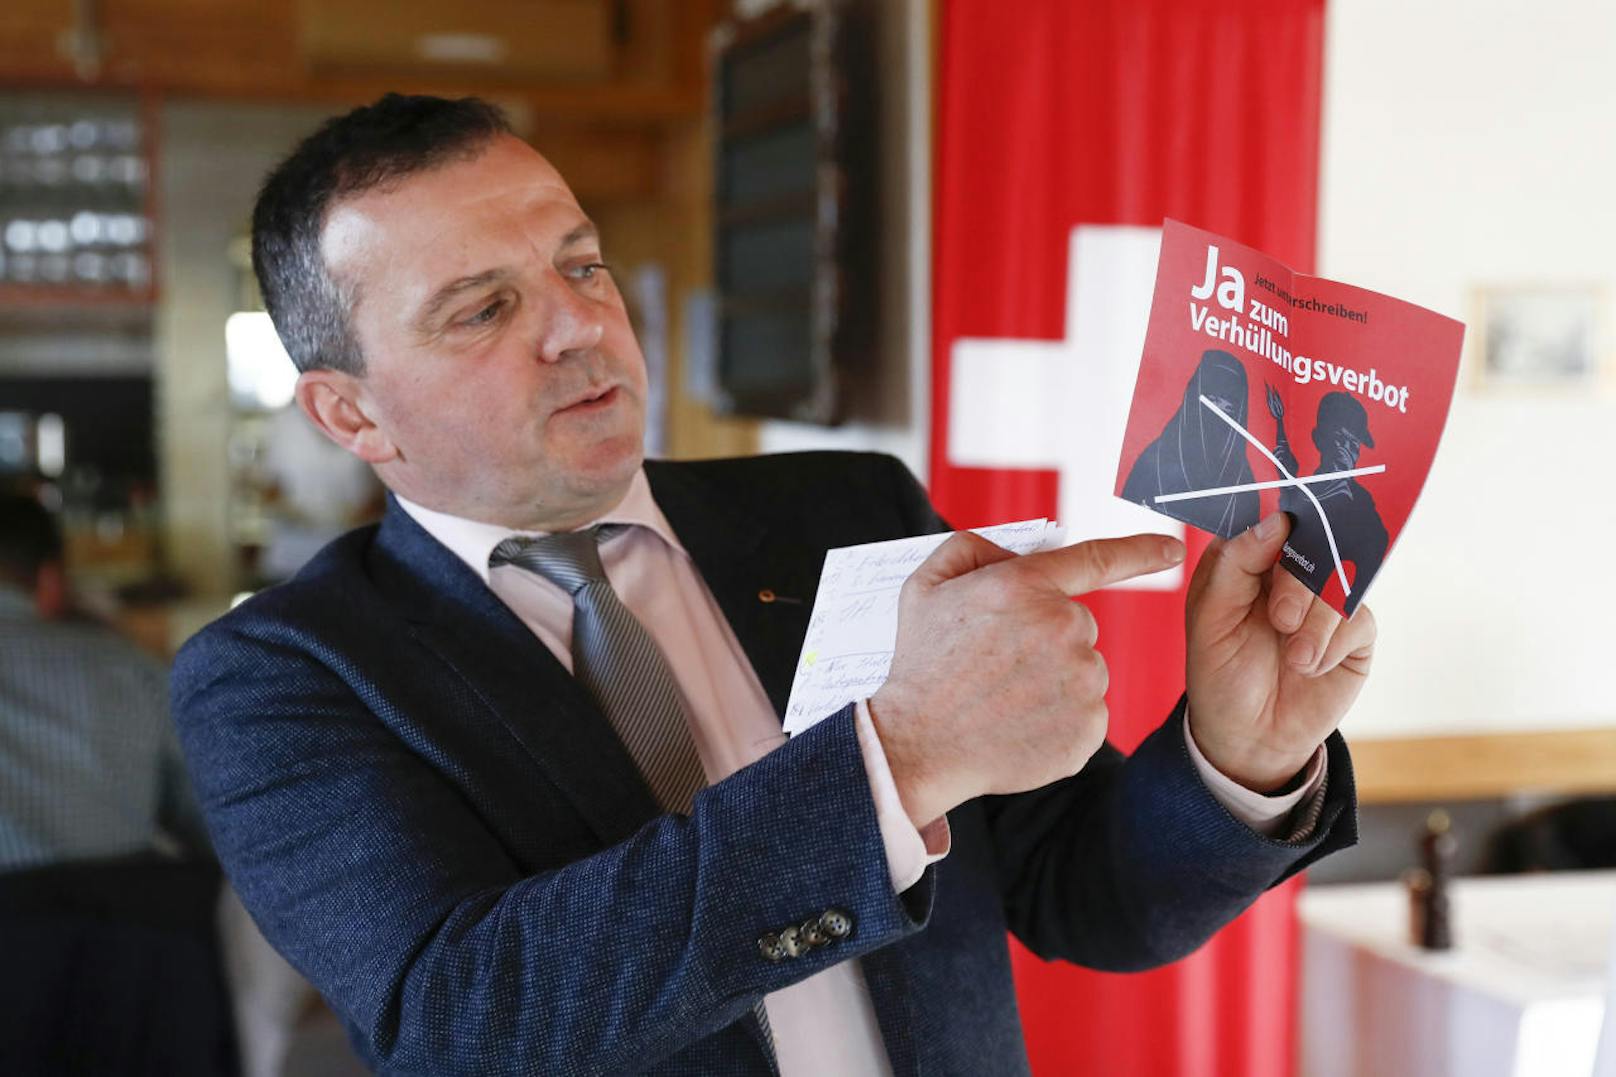 Die Initiative "Ja zum Verhüllungsverbot": Das Komitee um Walter Wobmann, Nationalrat der Schweizer Volkspartei (SVP), hat 100.000 Unterschriften gesammelt.